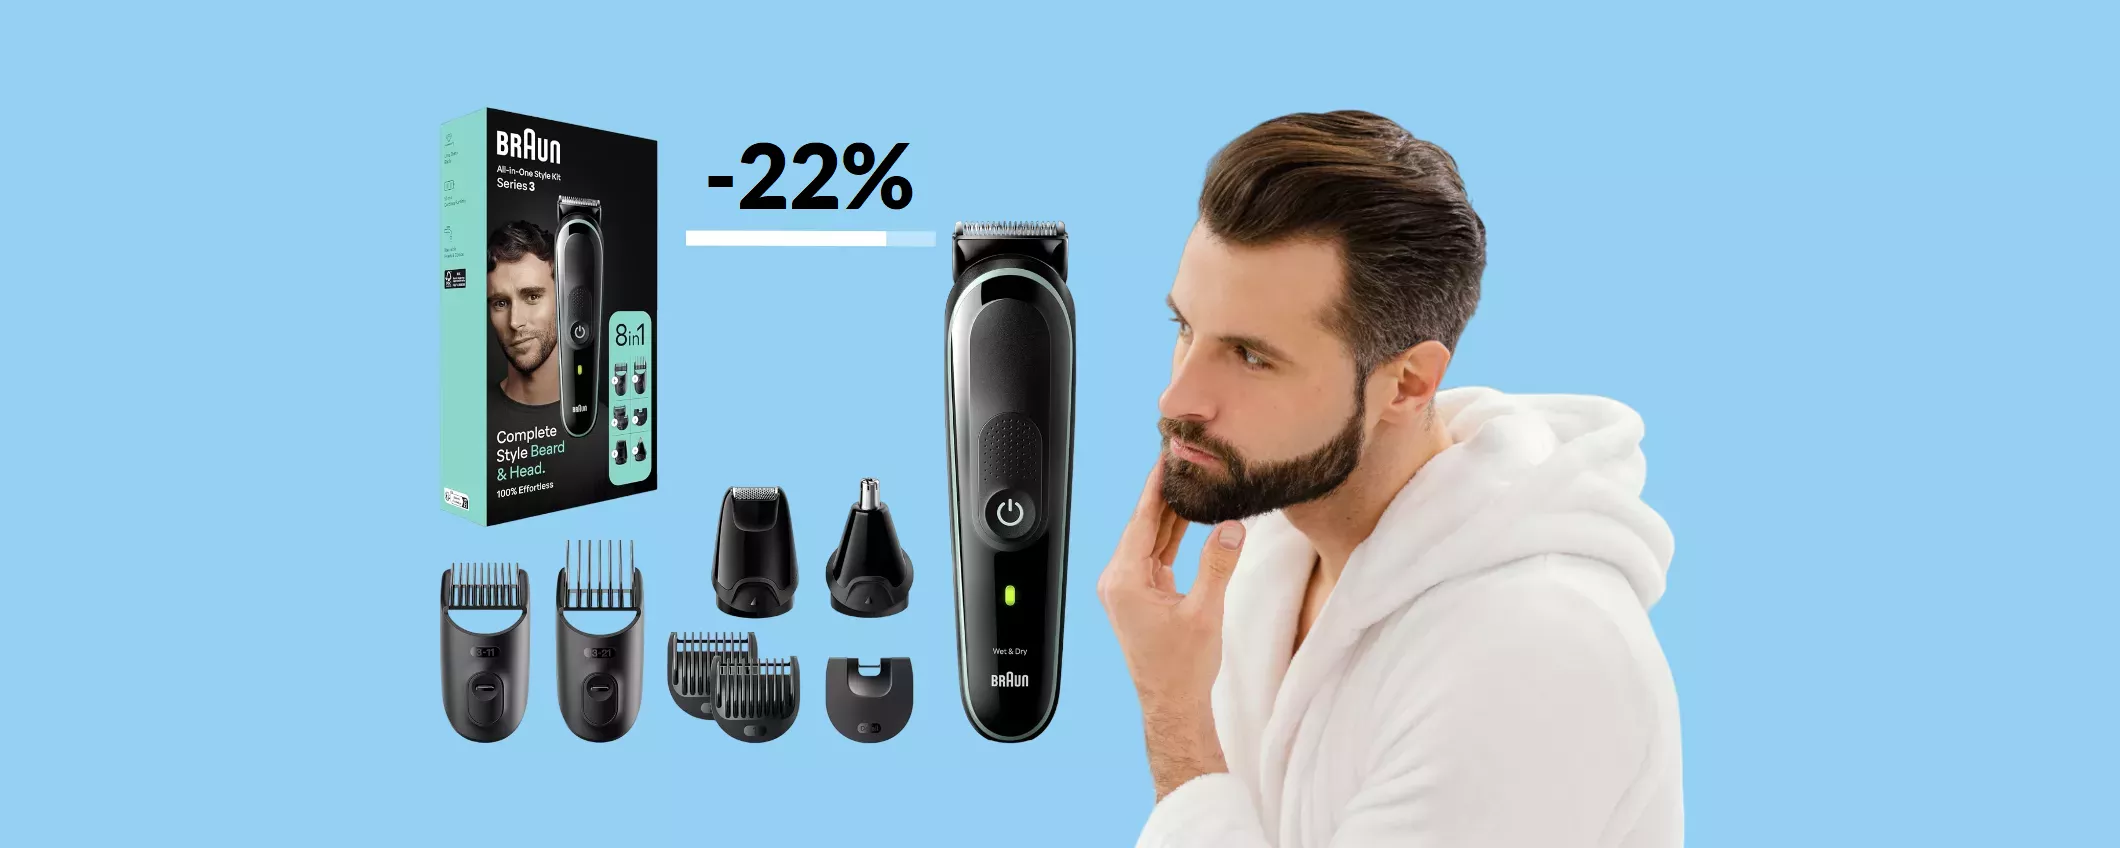 Rasoio elettrico Braun 8-in-1 per barba e capelli impeccabili (38€)